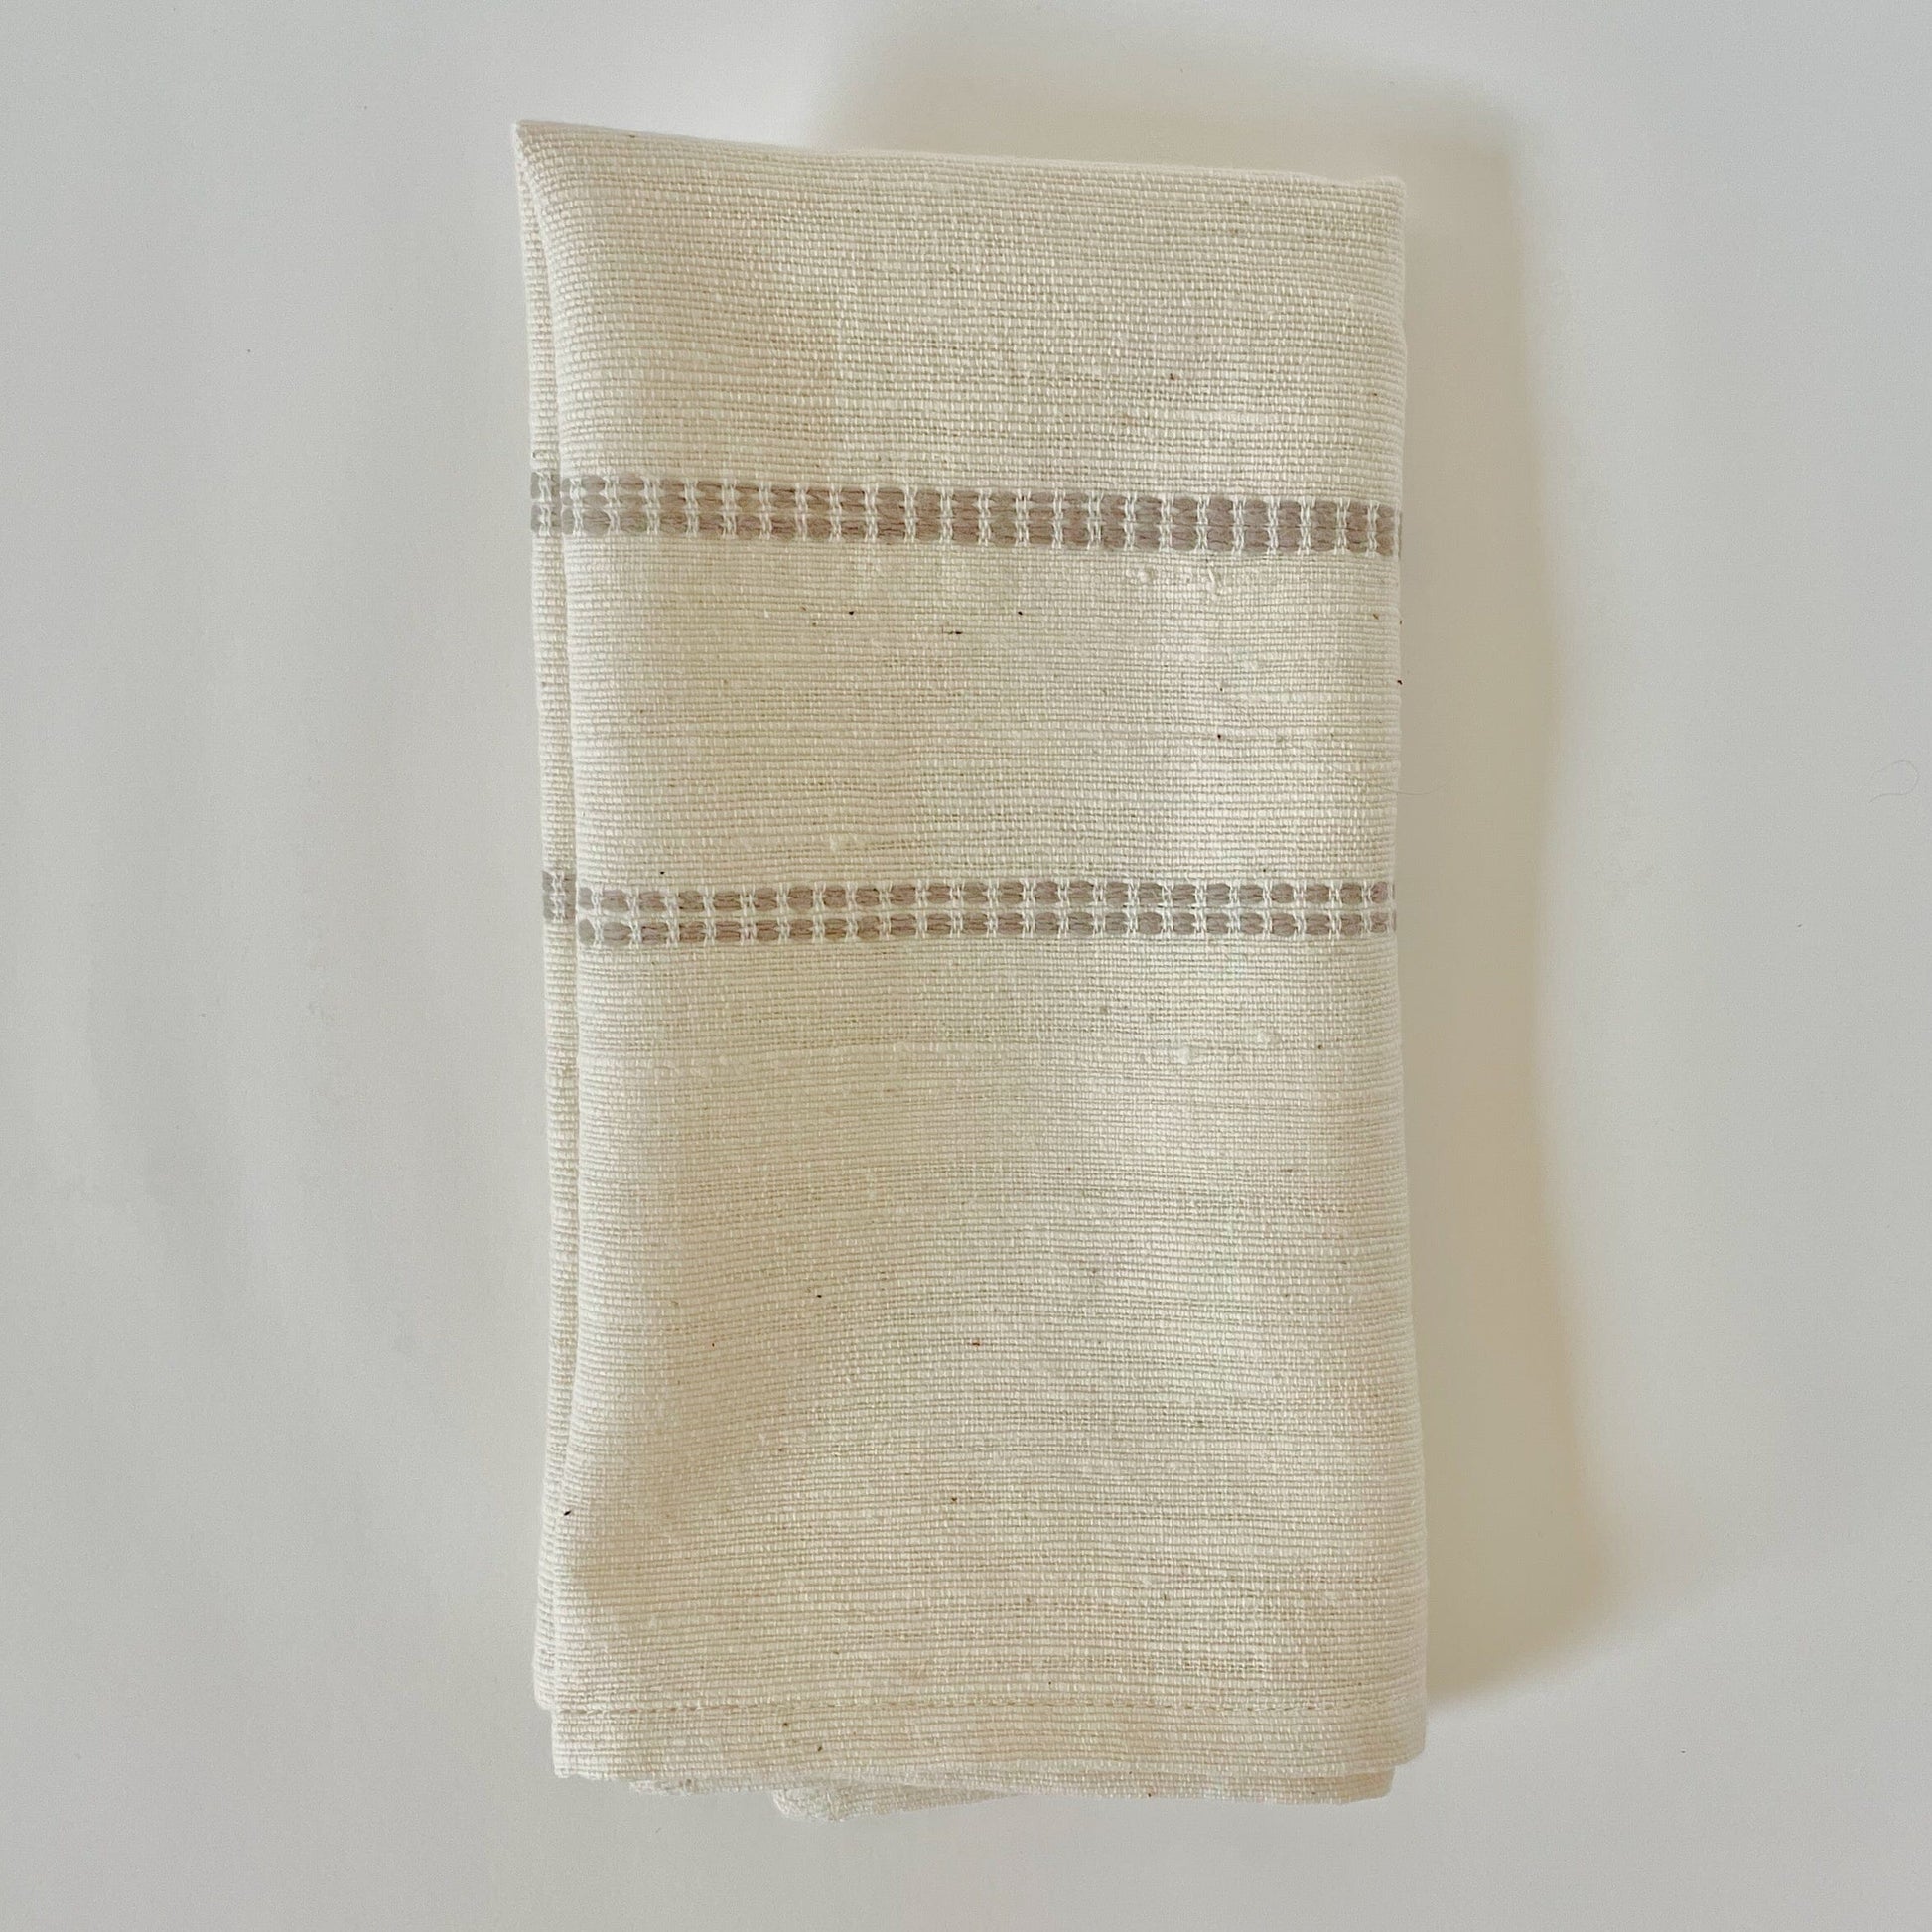 Chamo handwoven Ethiopian cotton napkins Napkins sabahar Stone 